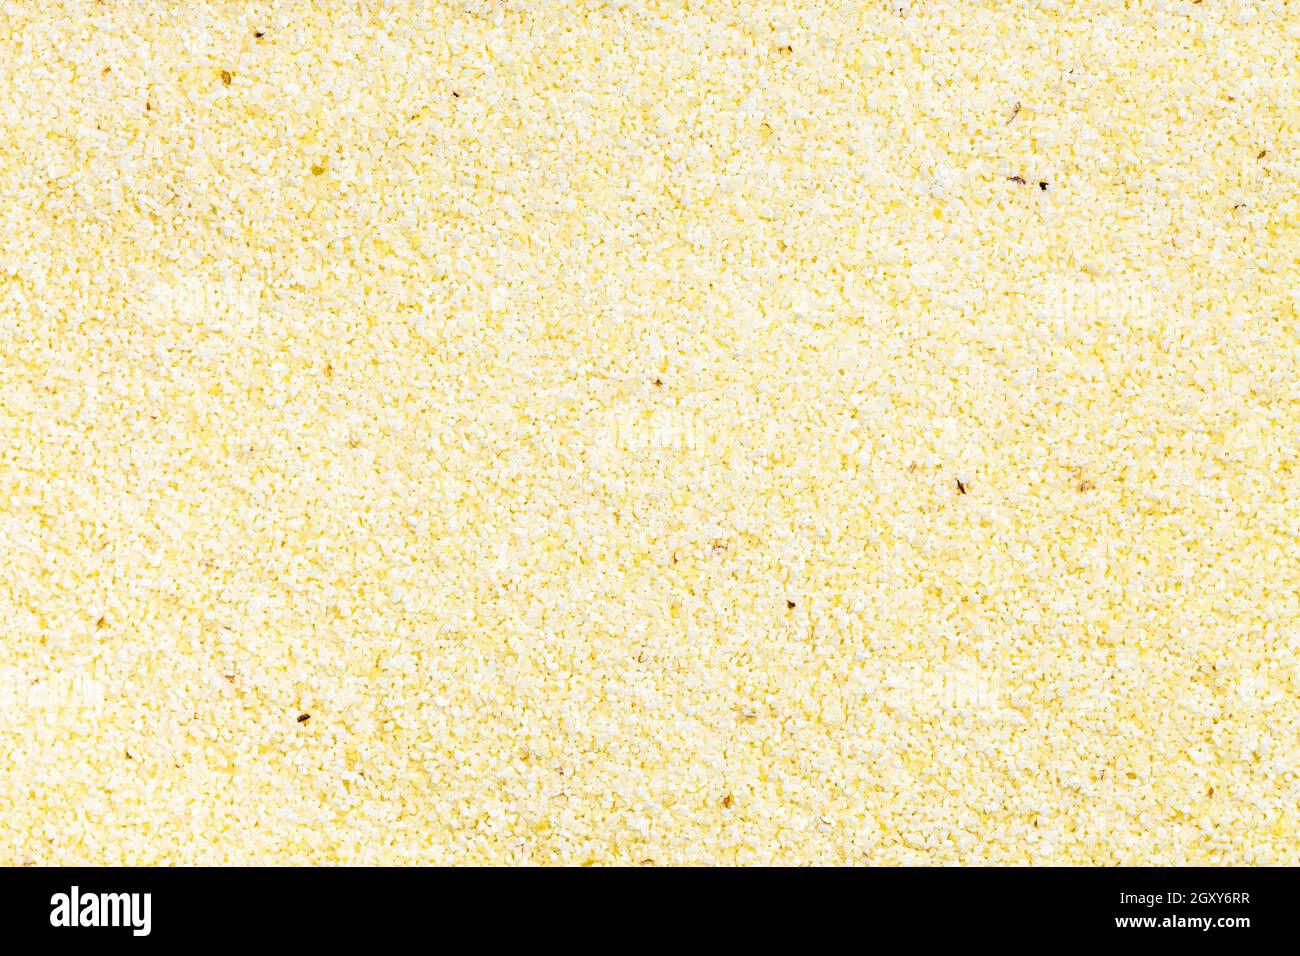 Hintergrund der Nahrung - ungekochte, weiche Weizen-Manna-Grütze Stockfoto